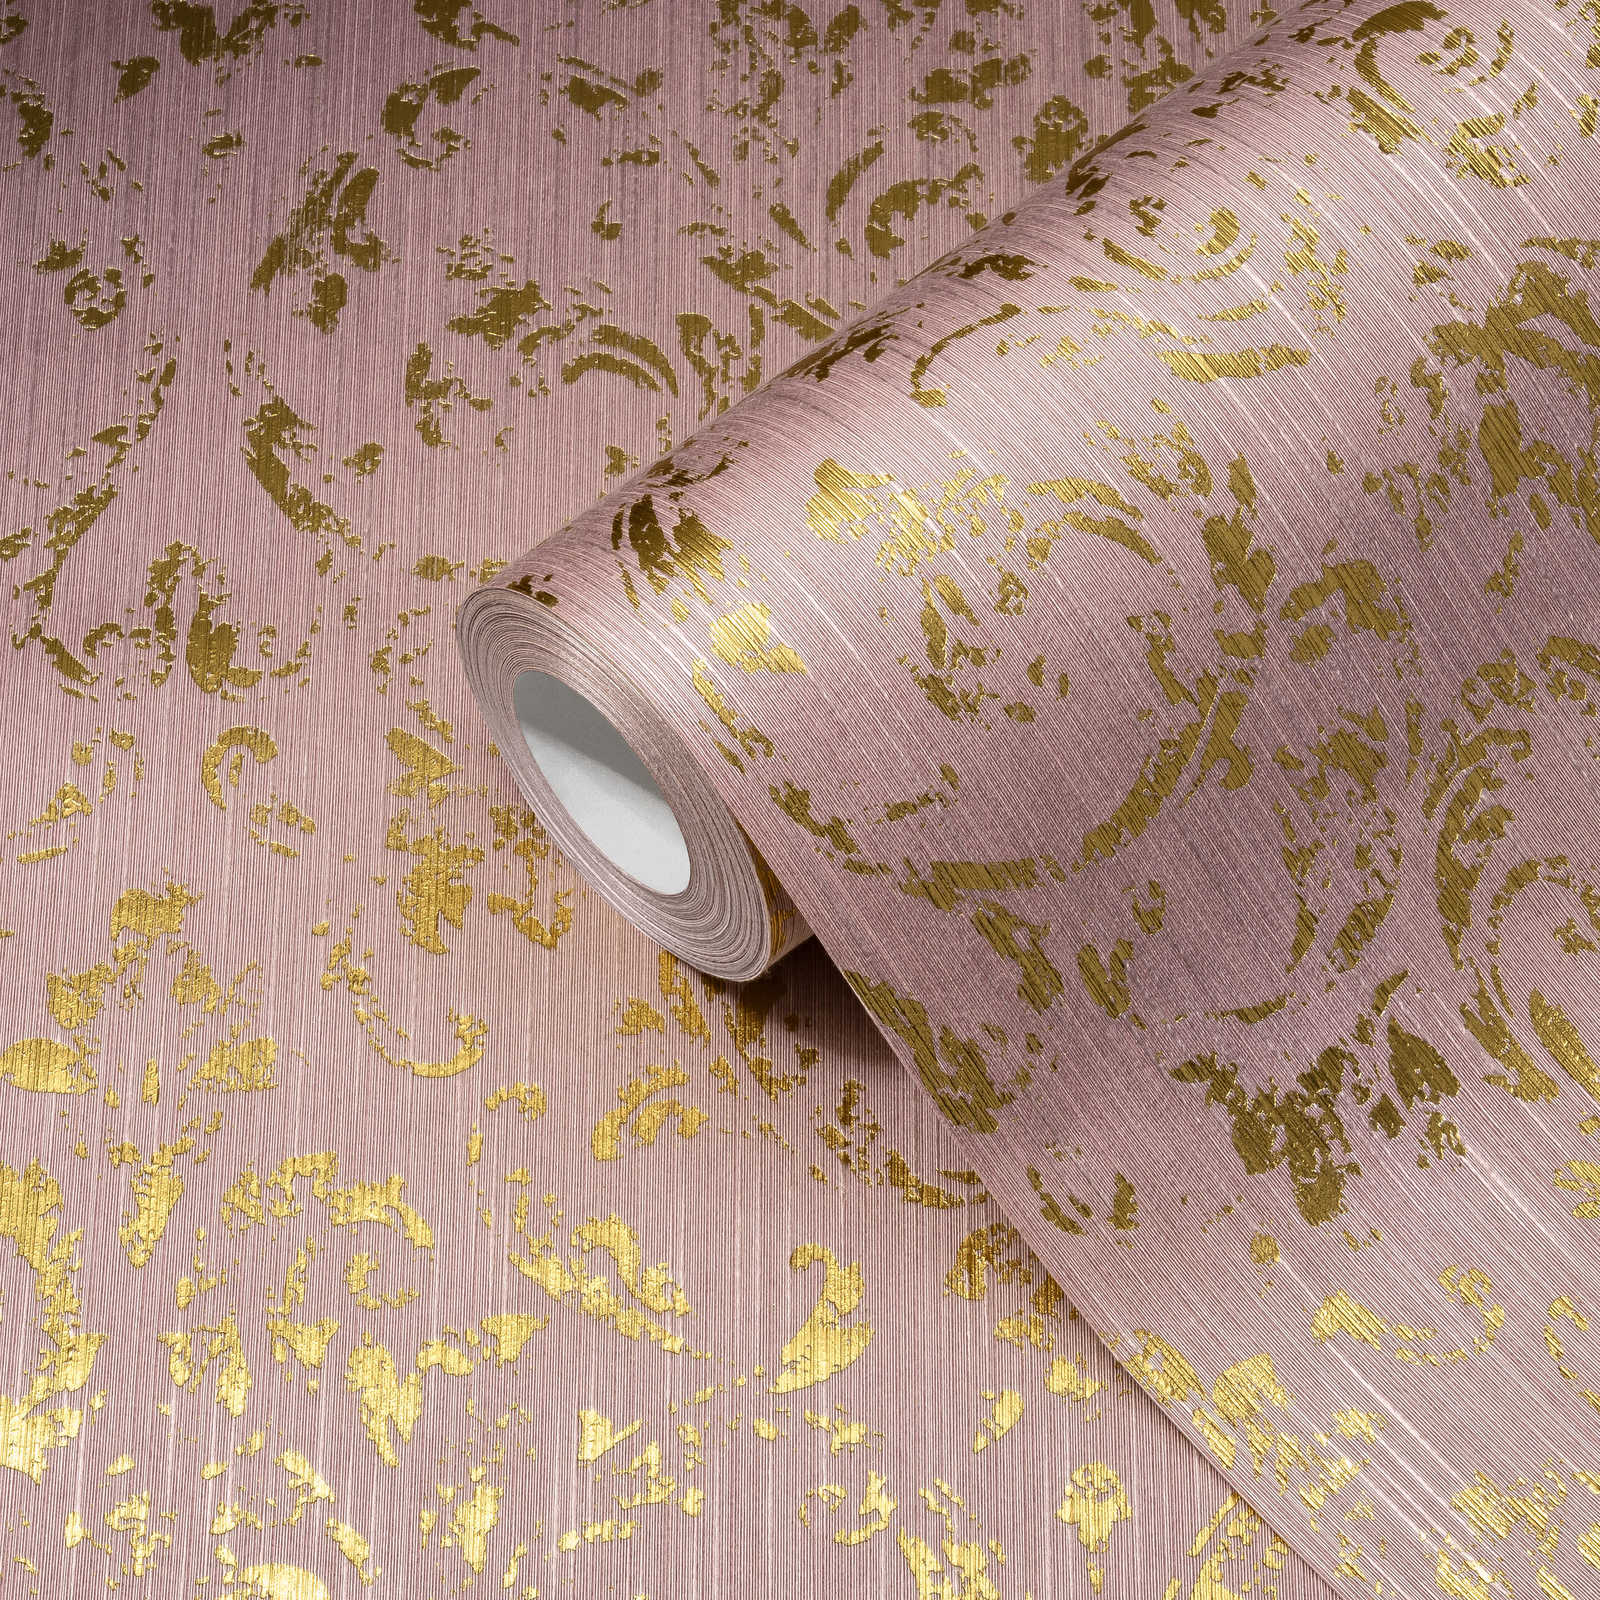             Papel pintado con adornos dorados en look usado - Rosa, Oro
        